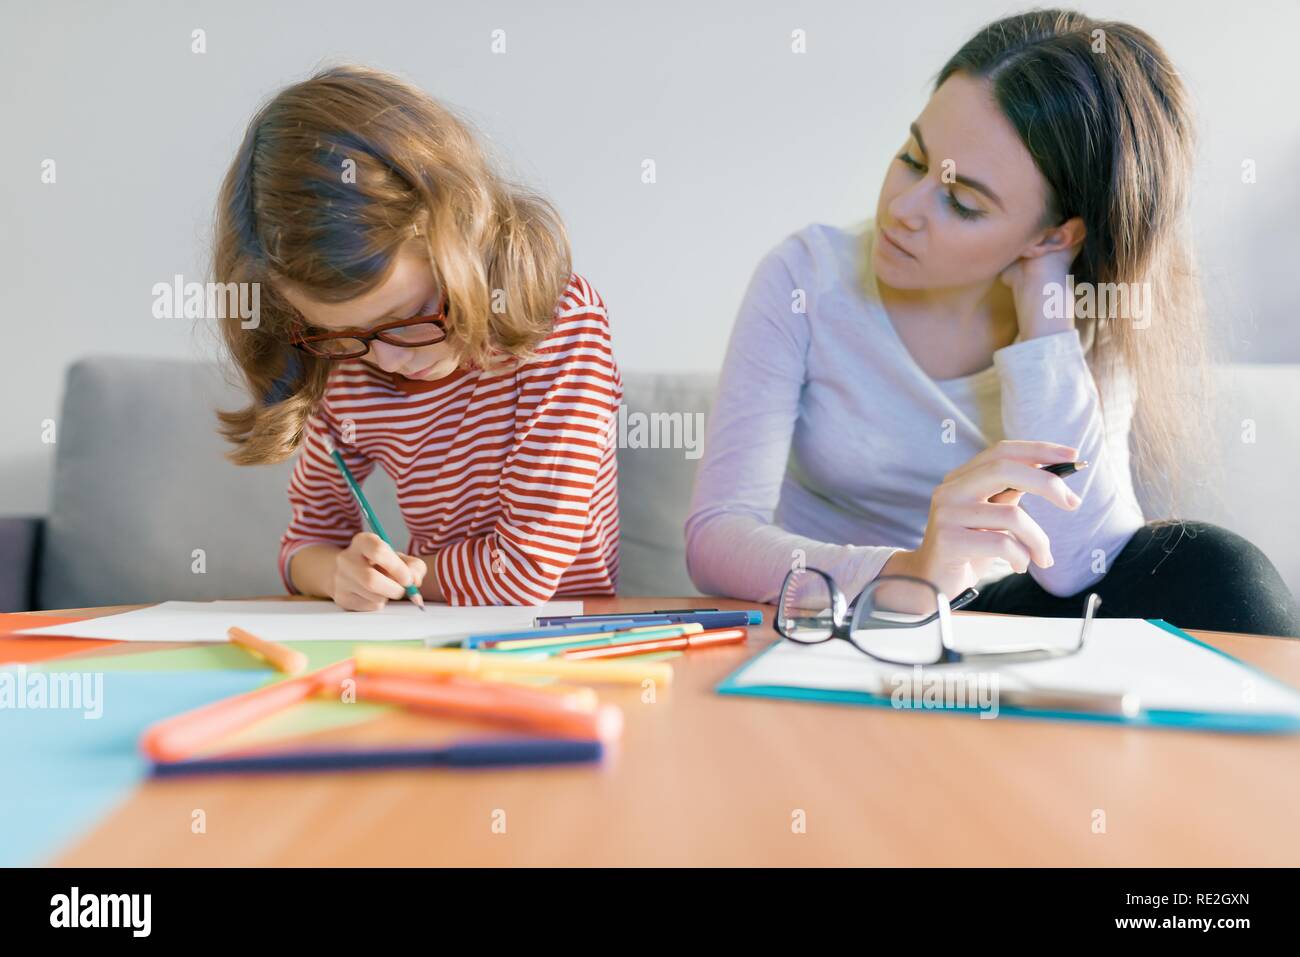 Jeune femme professeur donnerait des cours particuliers à l'enfant, petite fille assise à son bureau écrivant en ordinateur portable. Banque D'Images